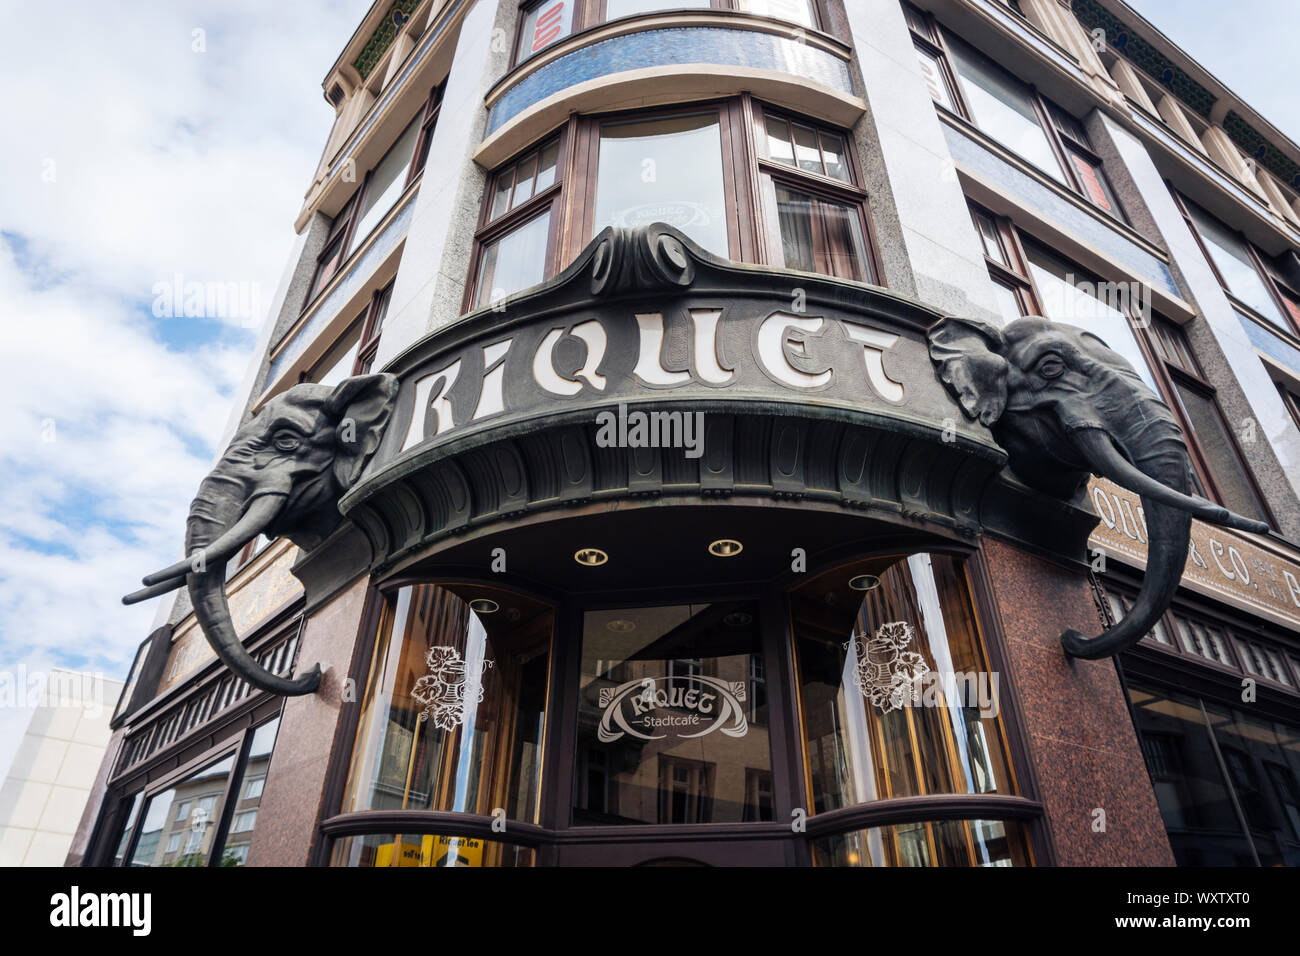 Leipzig Germania - Luglio 11, 2018: Cafe Riquet a Leipzig, Germania. Cafe facciata in stile coloniale con teste di elefanti dove il font è incorporato nel elep Foto Stock